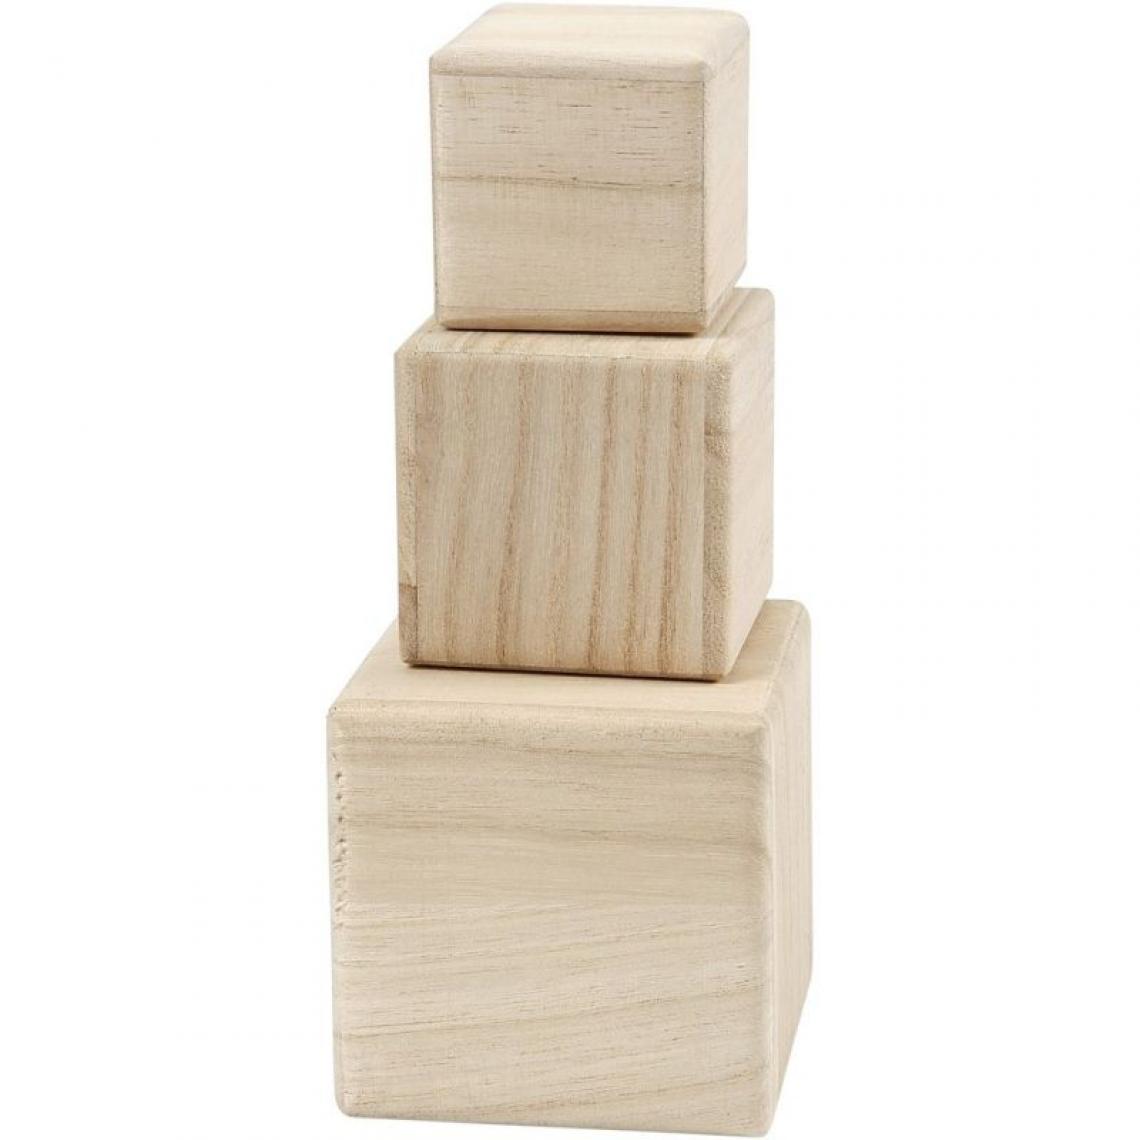 Creotime - 3 cubes en bois 5 / 6 / 8 cm - Objets déco